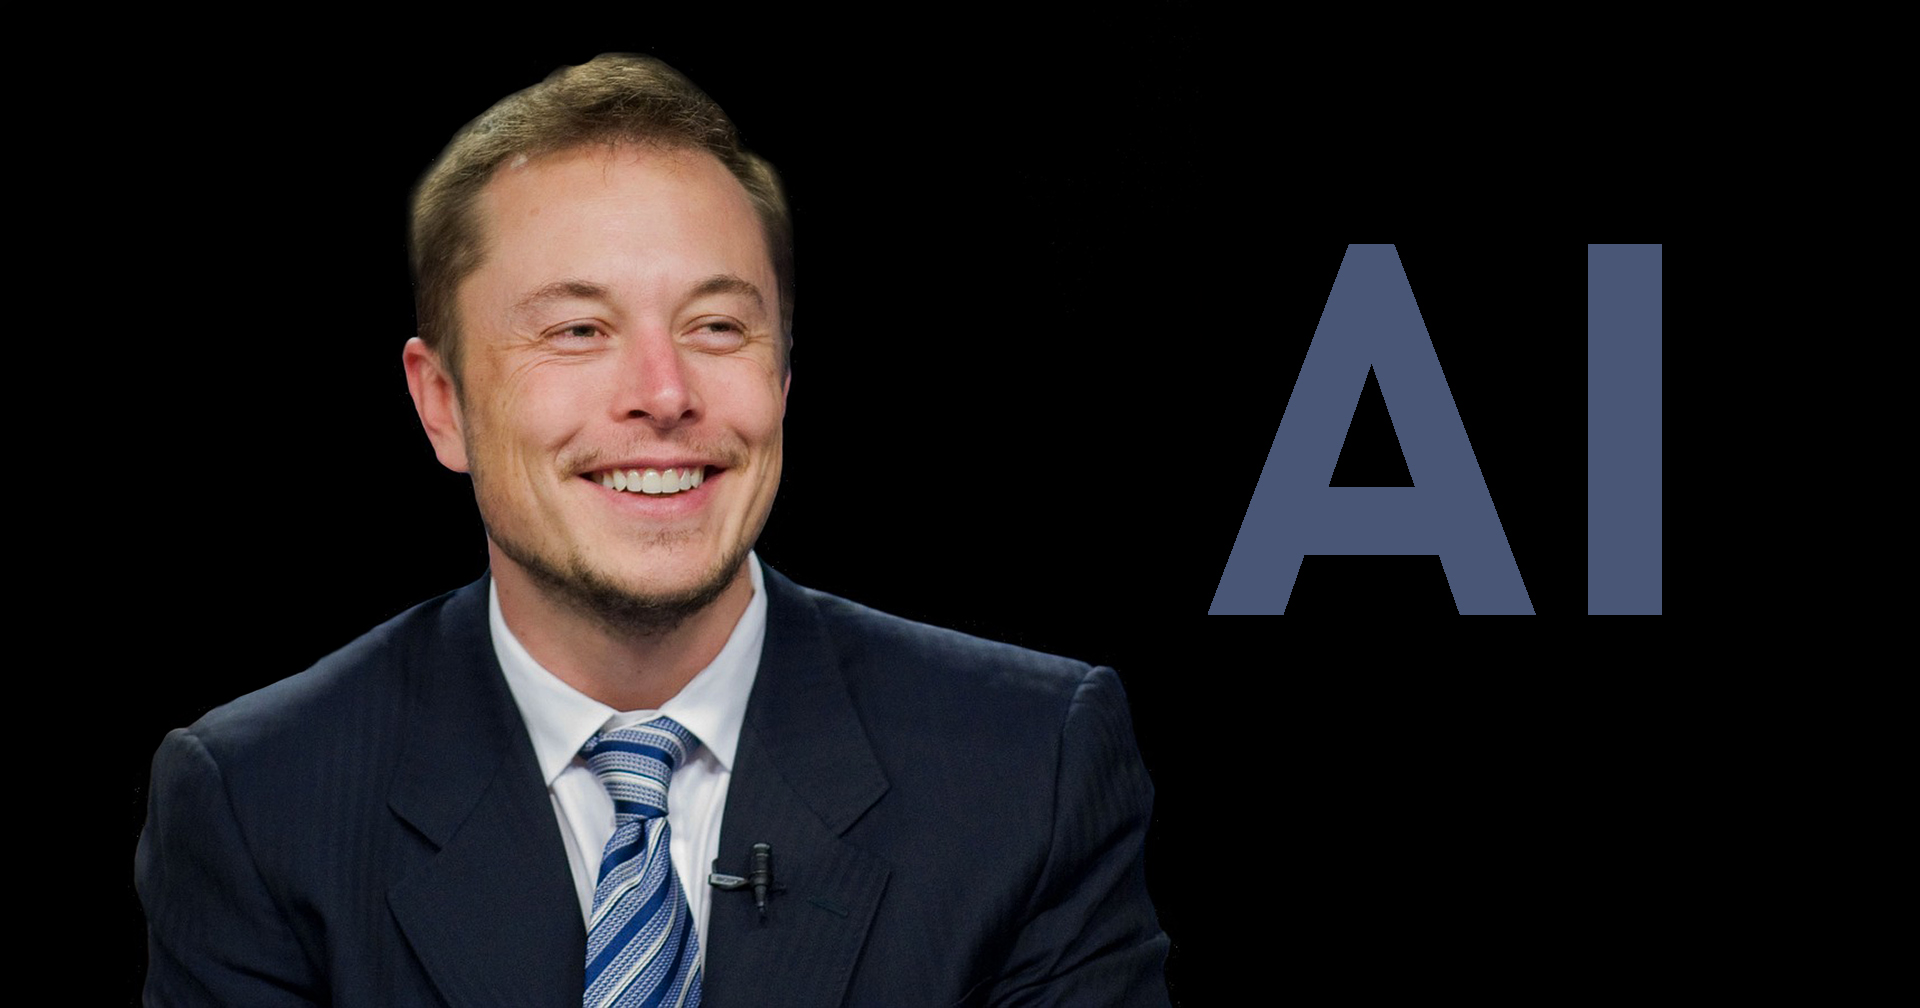 Elon Musk จะก่อตั้งบริษัท AI ของตนเอง! ที่ชื่อว่า X.AI